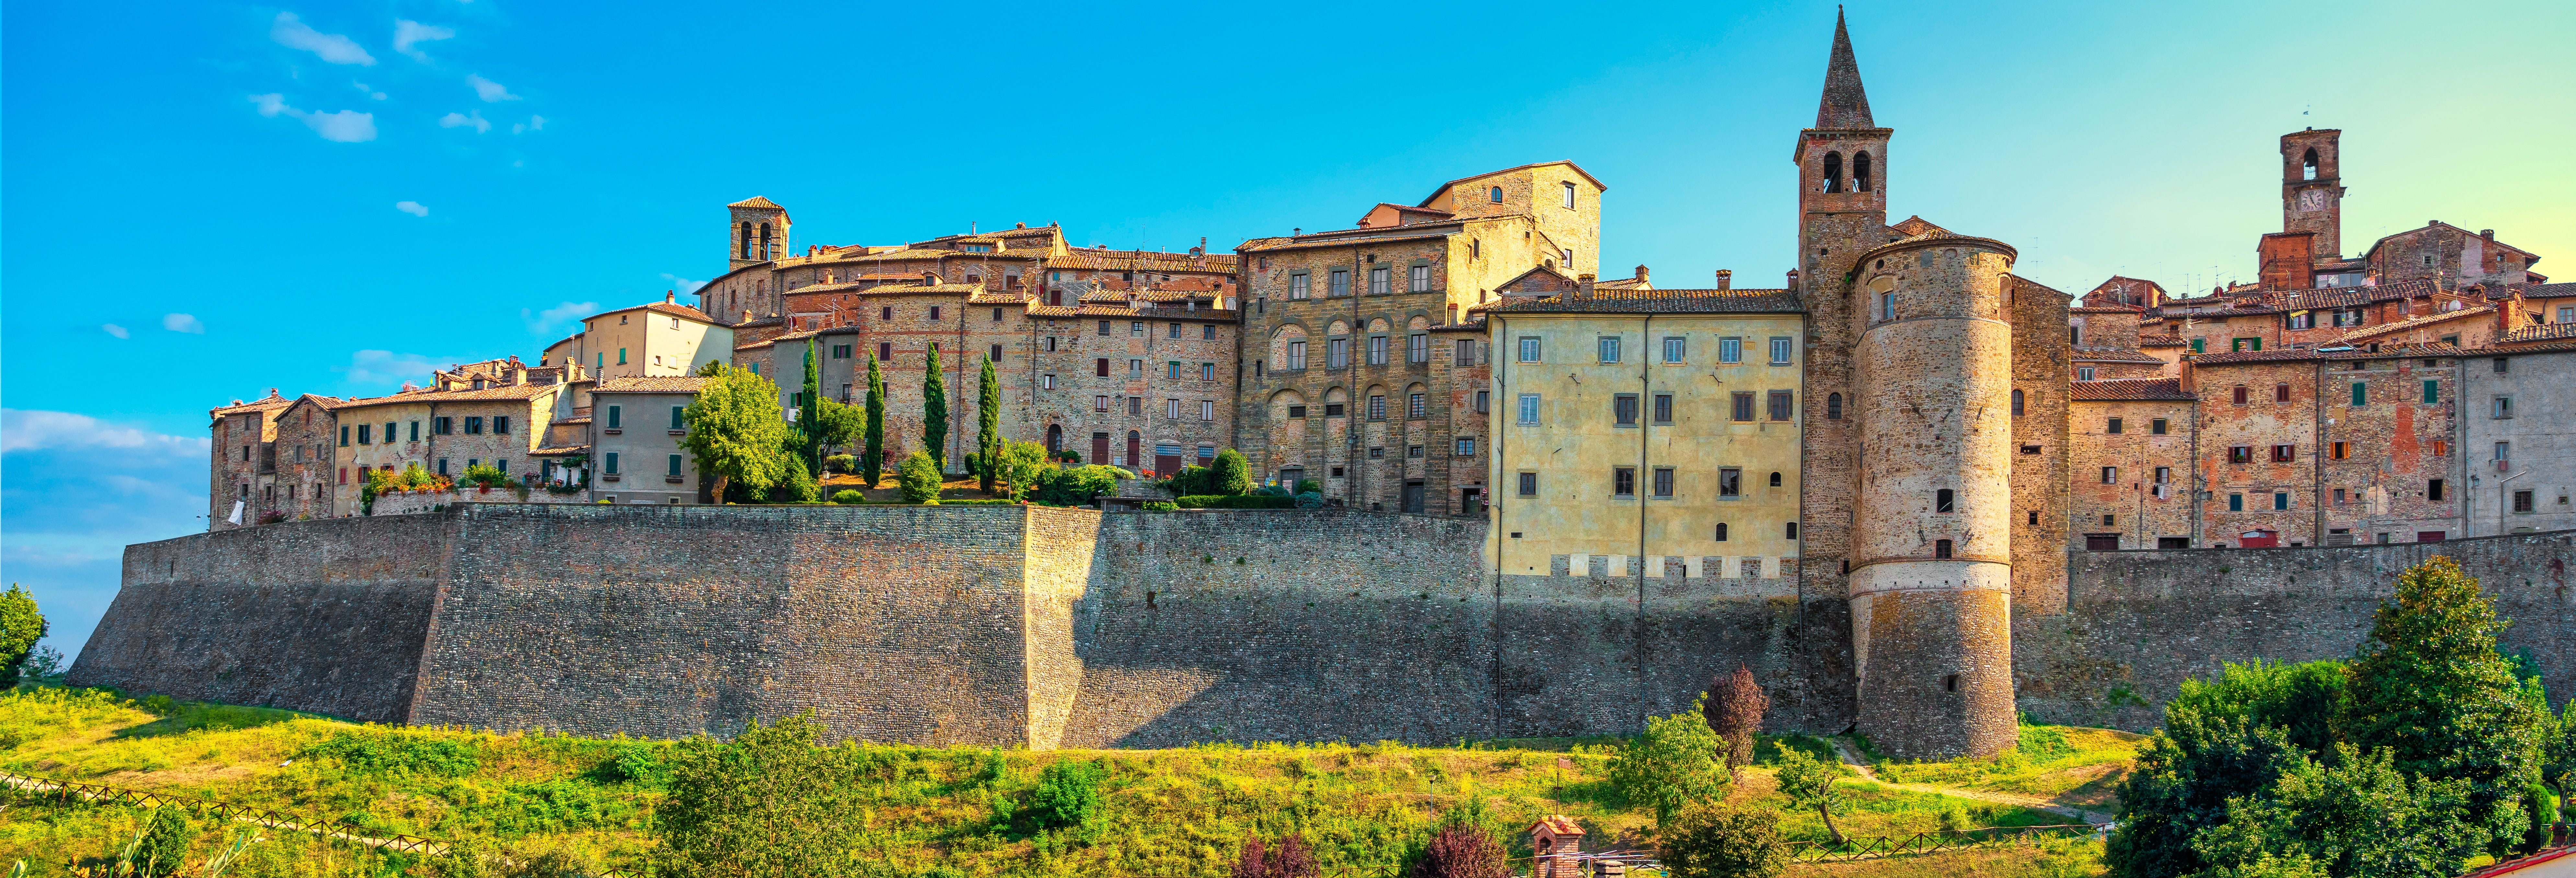 Excursiones, visitas guiadas y actividades en Arezzo - Civitatis